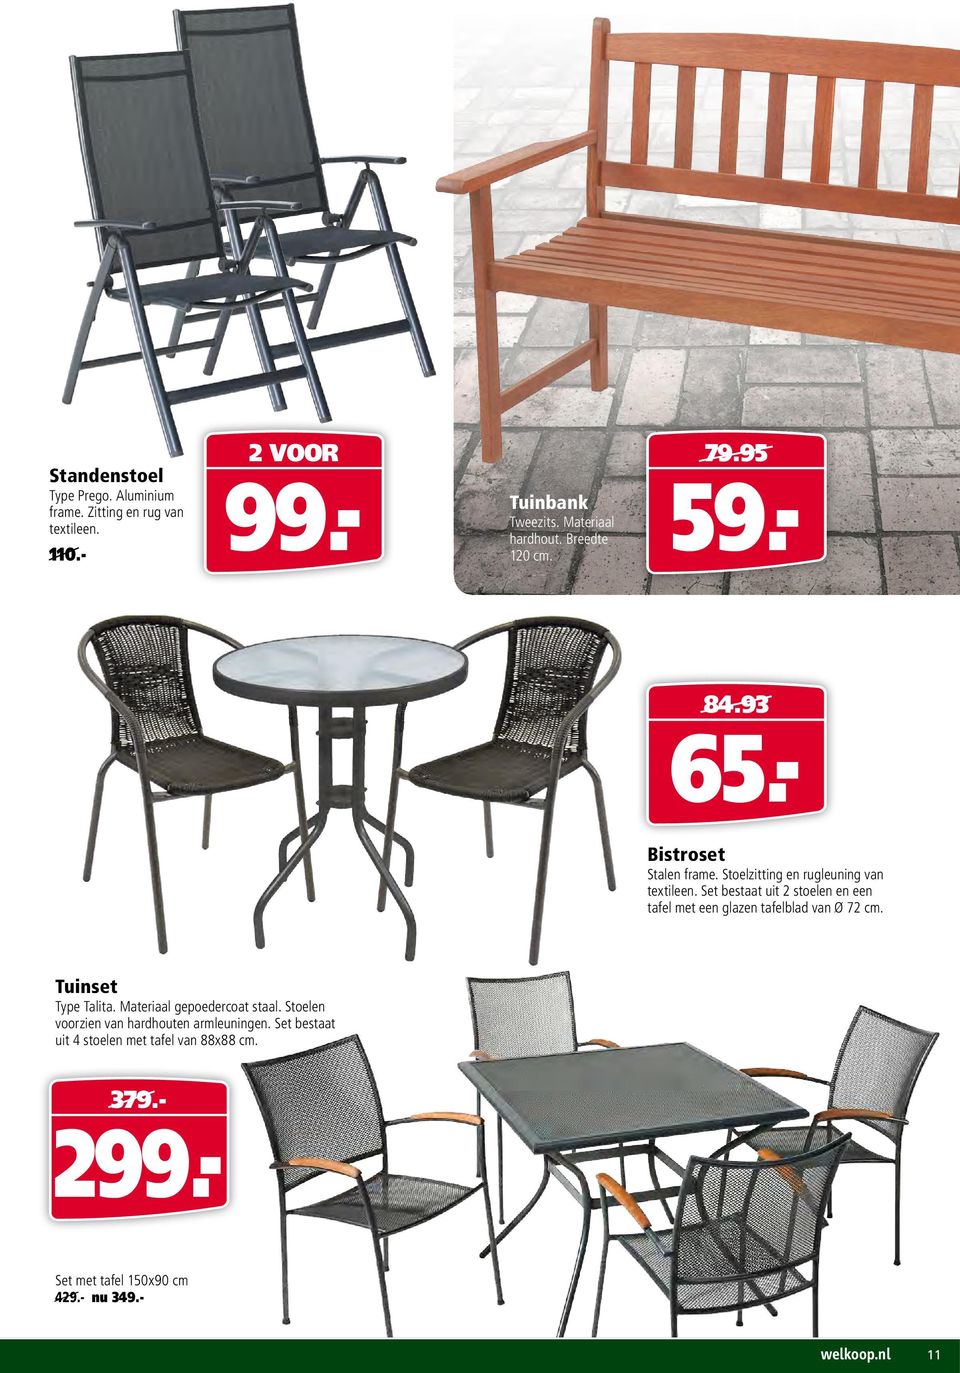 Set bestaat uit 2 stoelen en een tafel met een glazen tafelblad van Ø 72 cm. Tuinset Type Talita. Materiaal gepoedercoat staal.